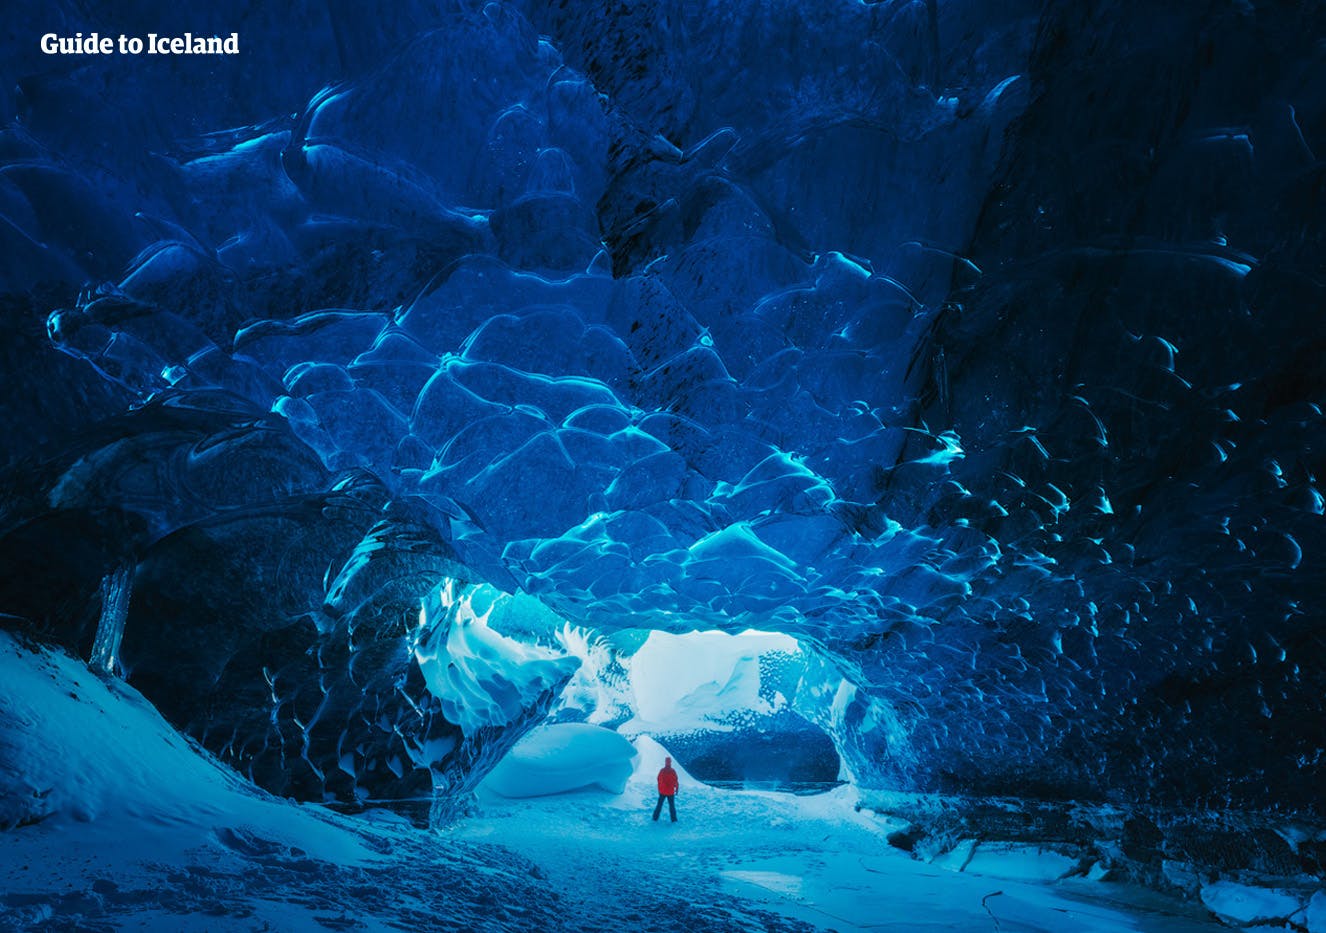 Olśniewające niebieskie wnętrze lodowych jaskiń Islandii.